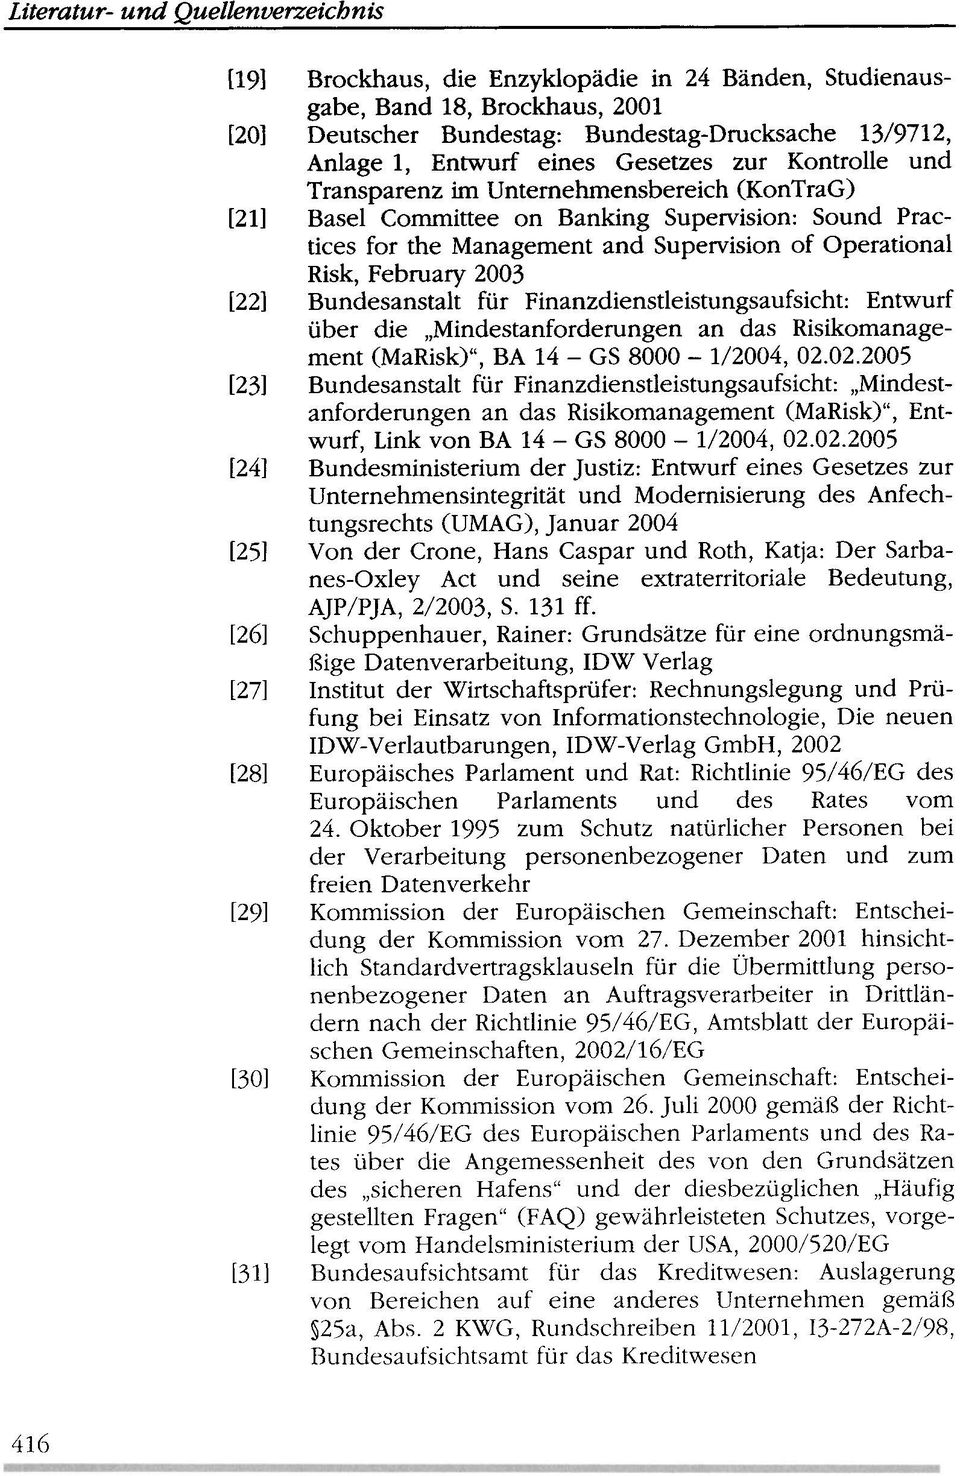 February 2003 [22] Bundesanstalt für Finanzdienstleistungsaufsicht: Entwurf über die "Mindestanforderungen an das Risikomanagement (MaRisk)", BA 14 - GS 8000-1/2004, 02.